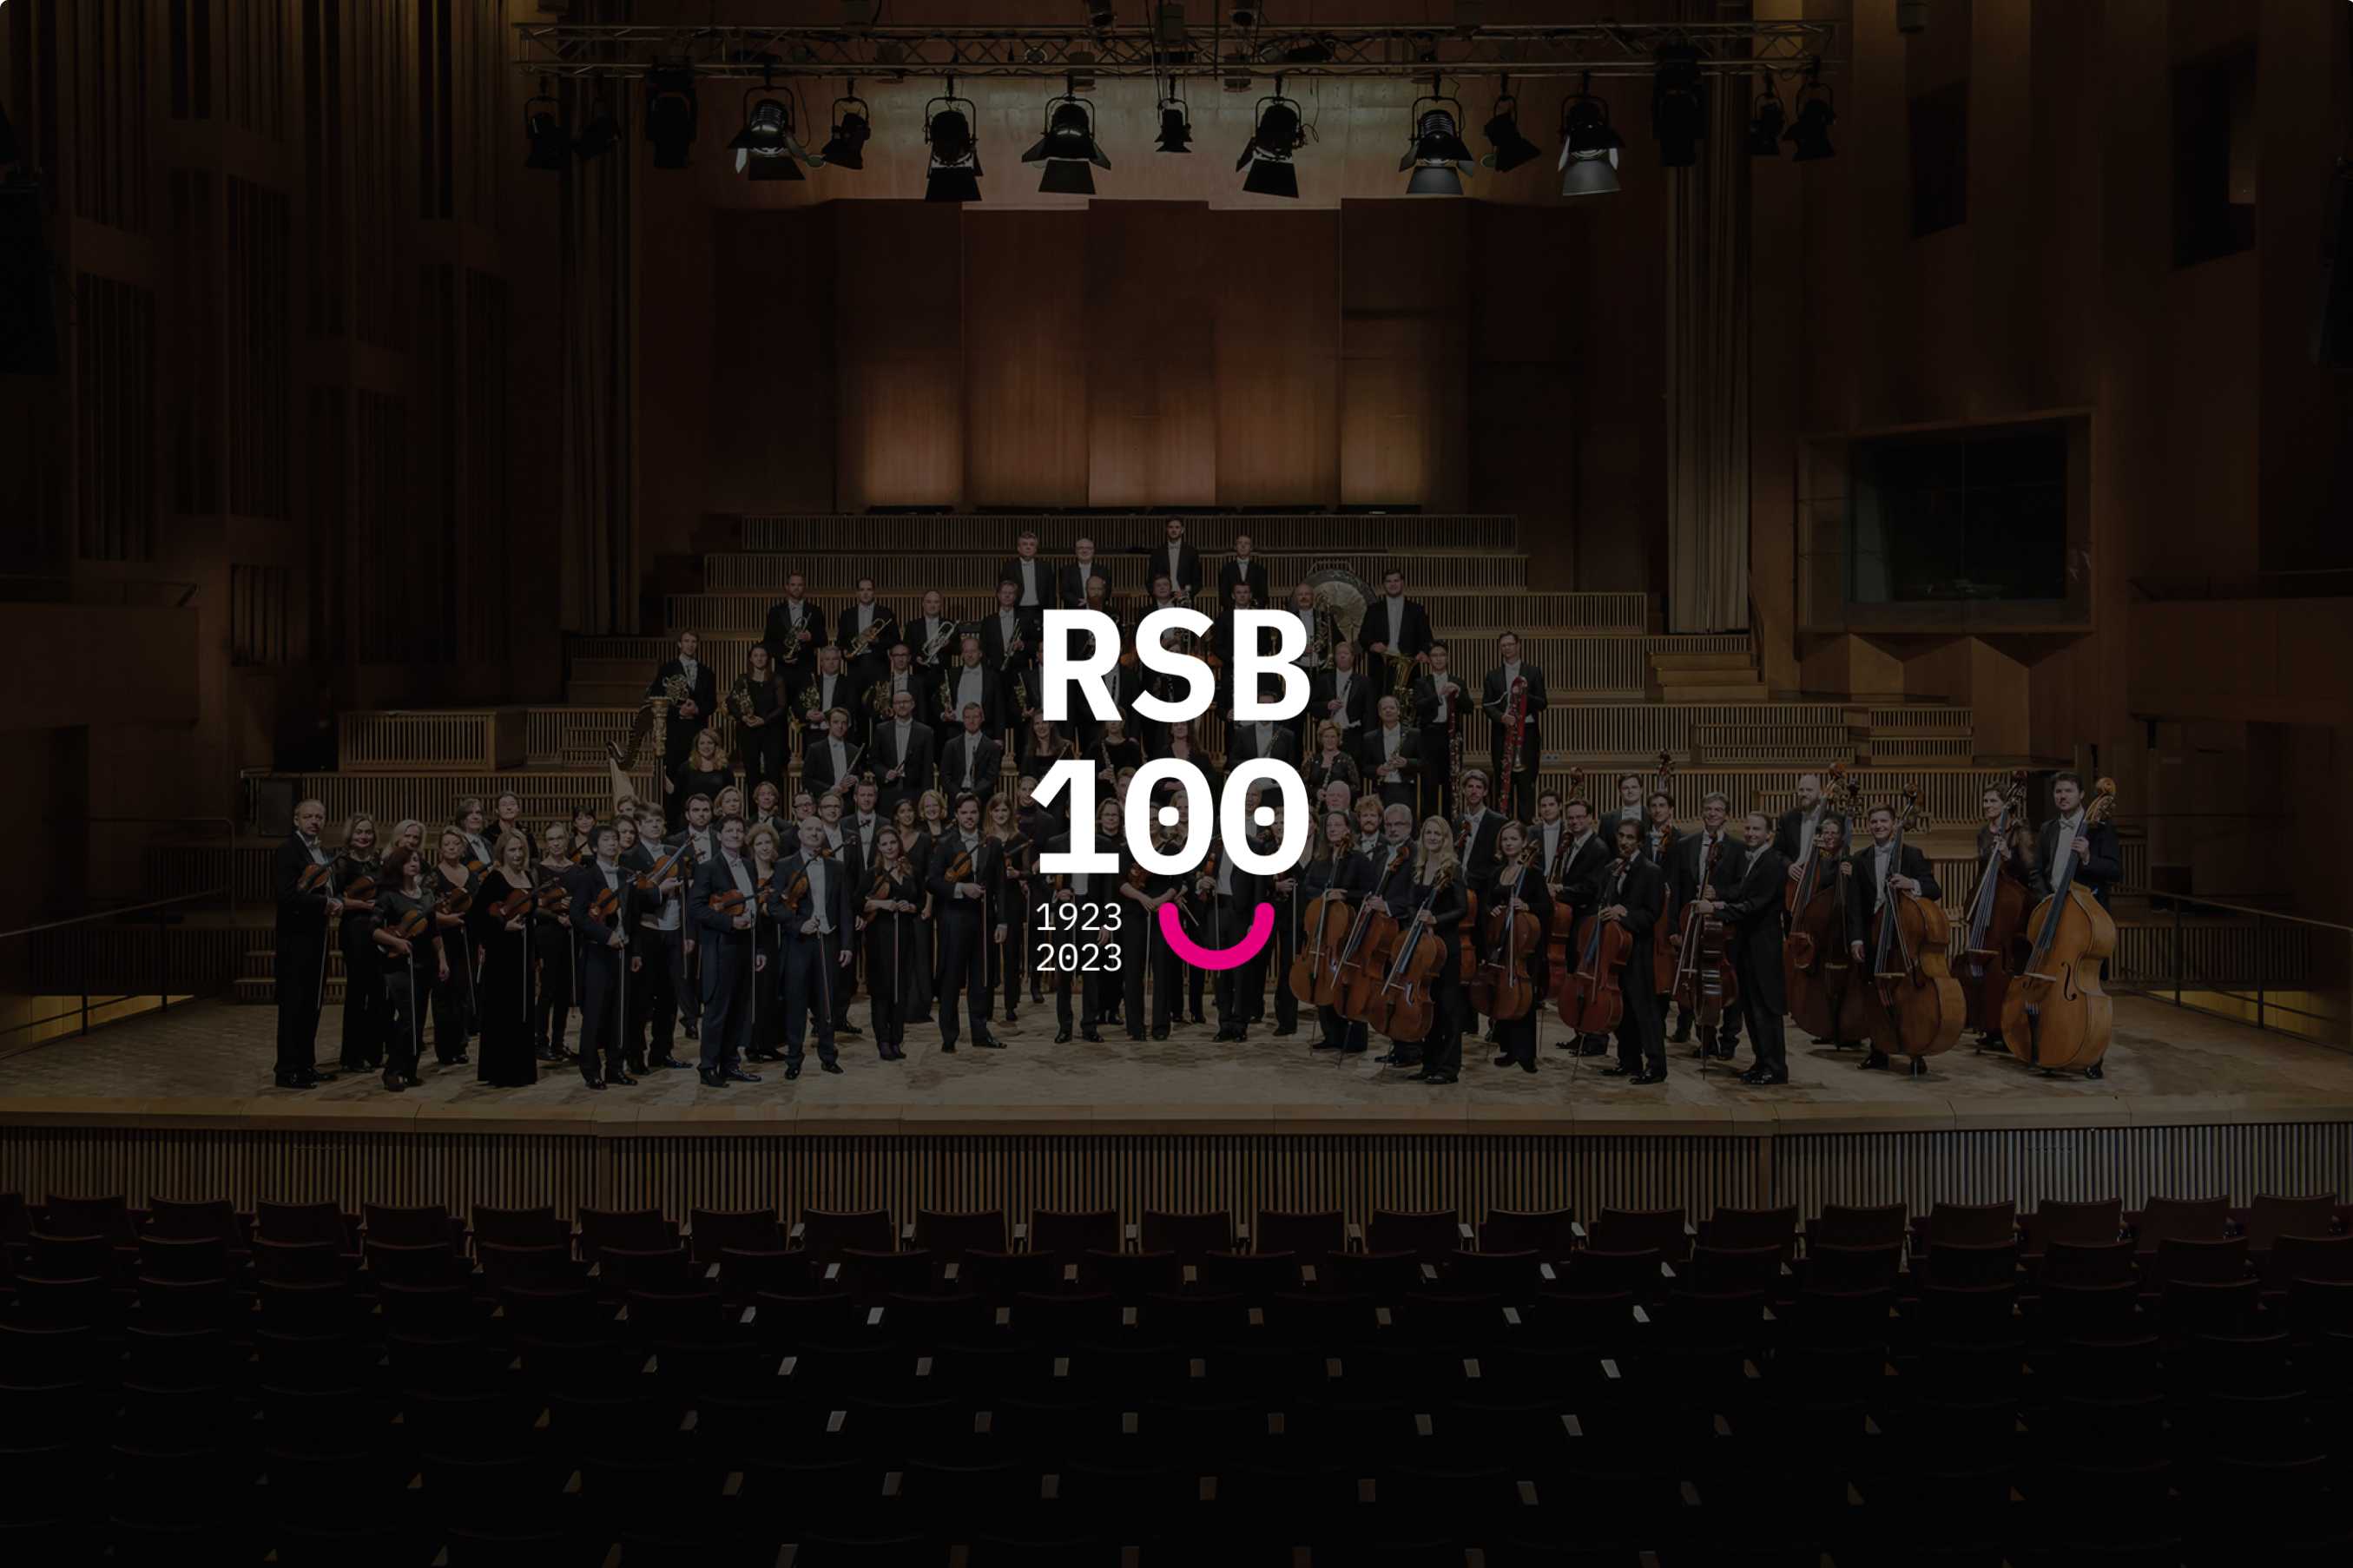 Rundfunk-Sinfonieorchester im Studio 14 - Die rbb Dachlounge